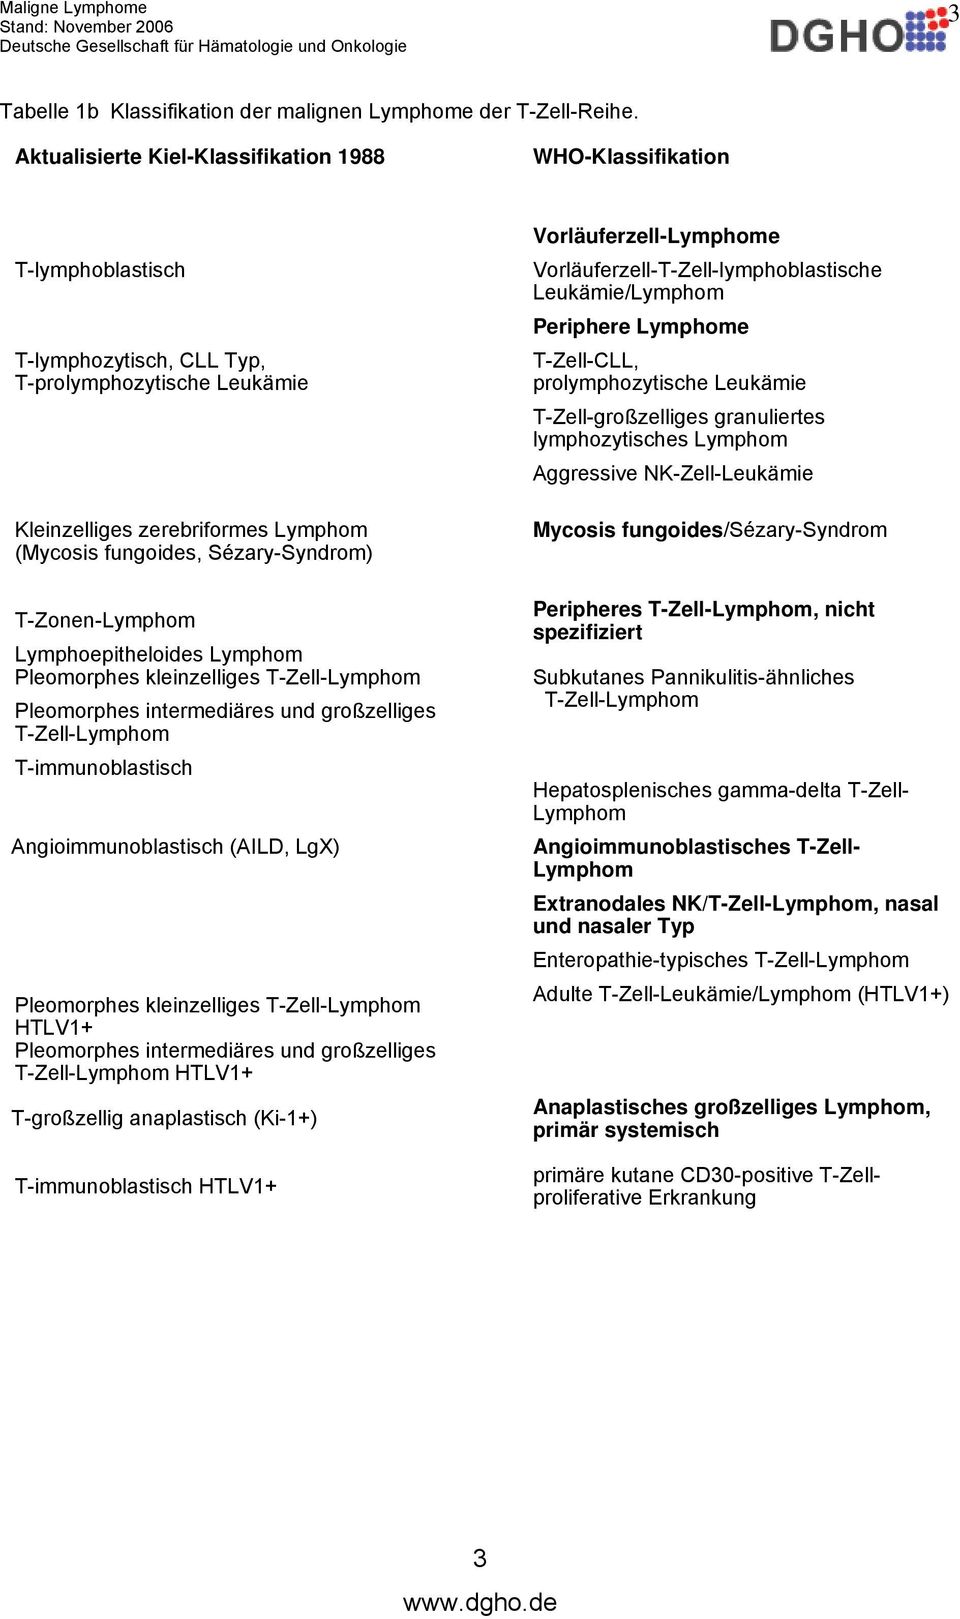 Sézary-Syndrom) T-Zonen-Lymphom Lymphoepitheloides Lymphom Pleomorphes kleinzelliges T-Zell-Lymphom Pleomorphes intermediäres und großzelliges T-Zell-Lymphom T-immunoblastisch Angioimmunoblastisch